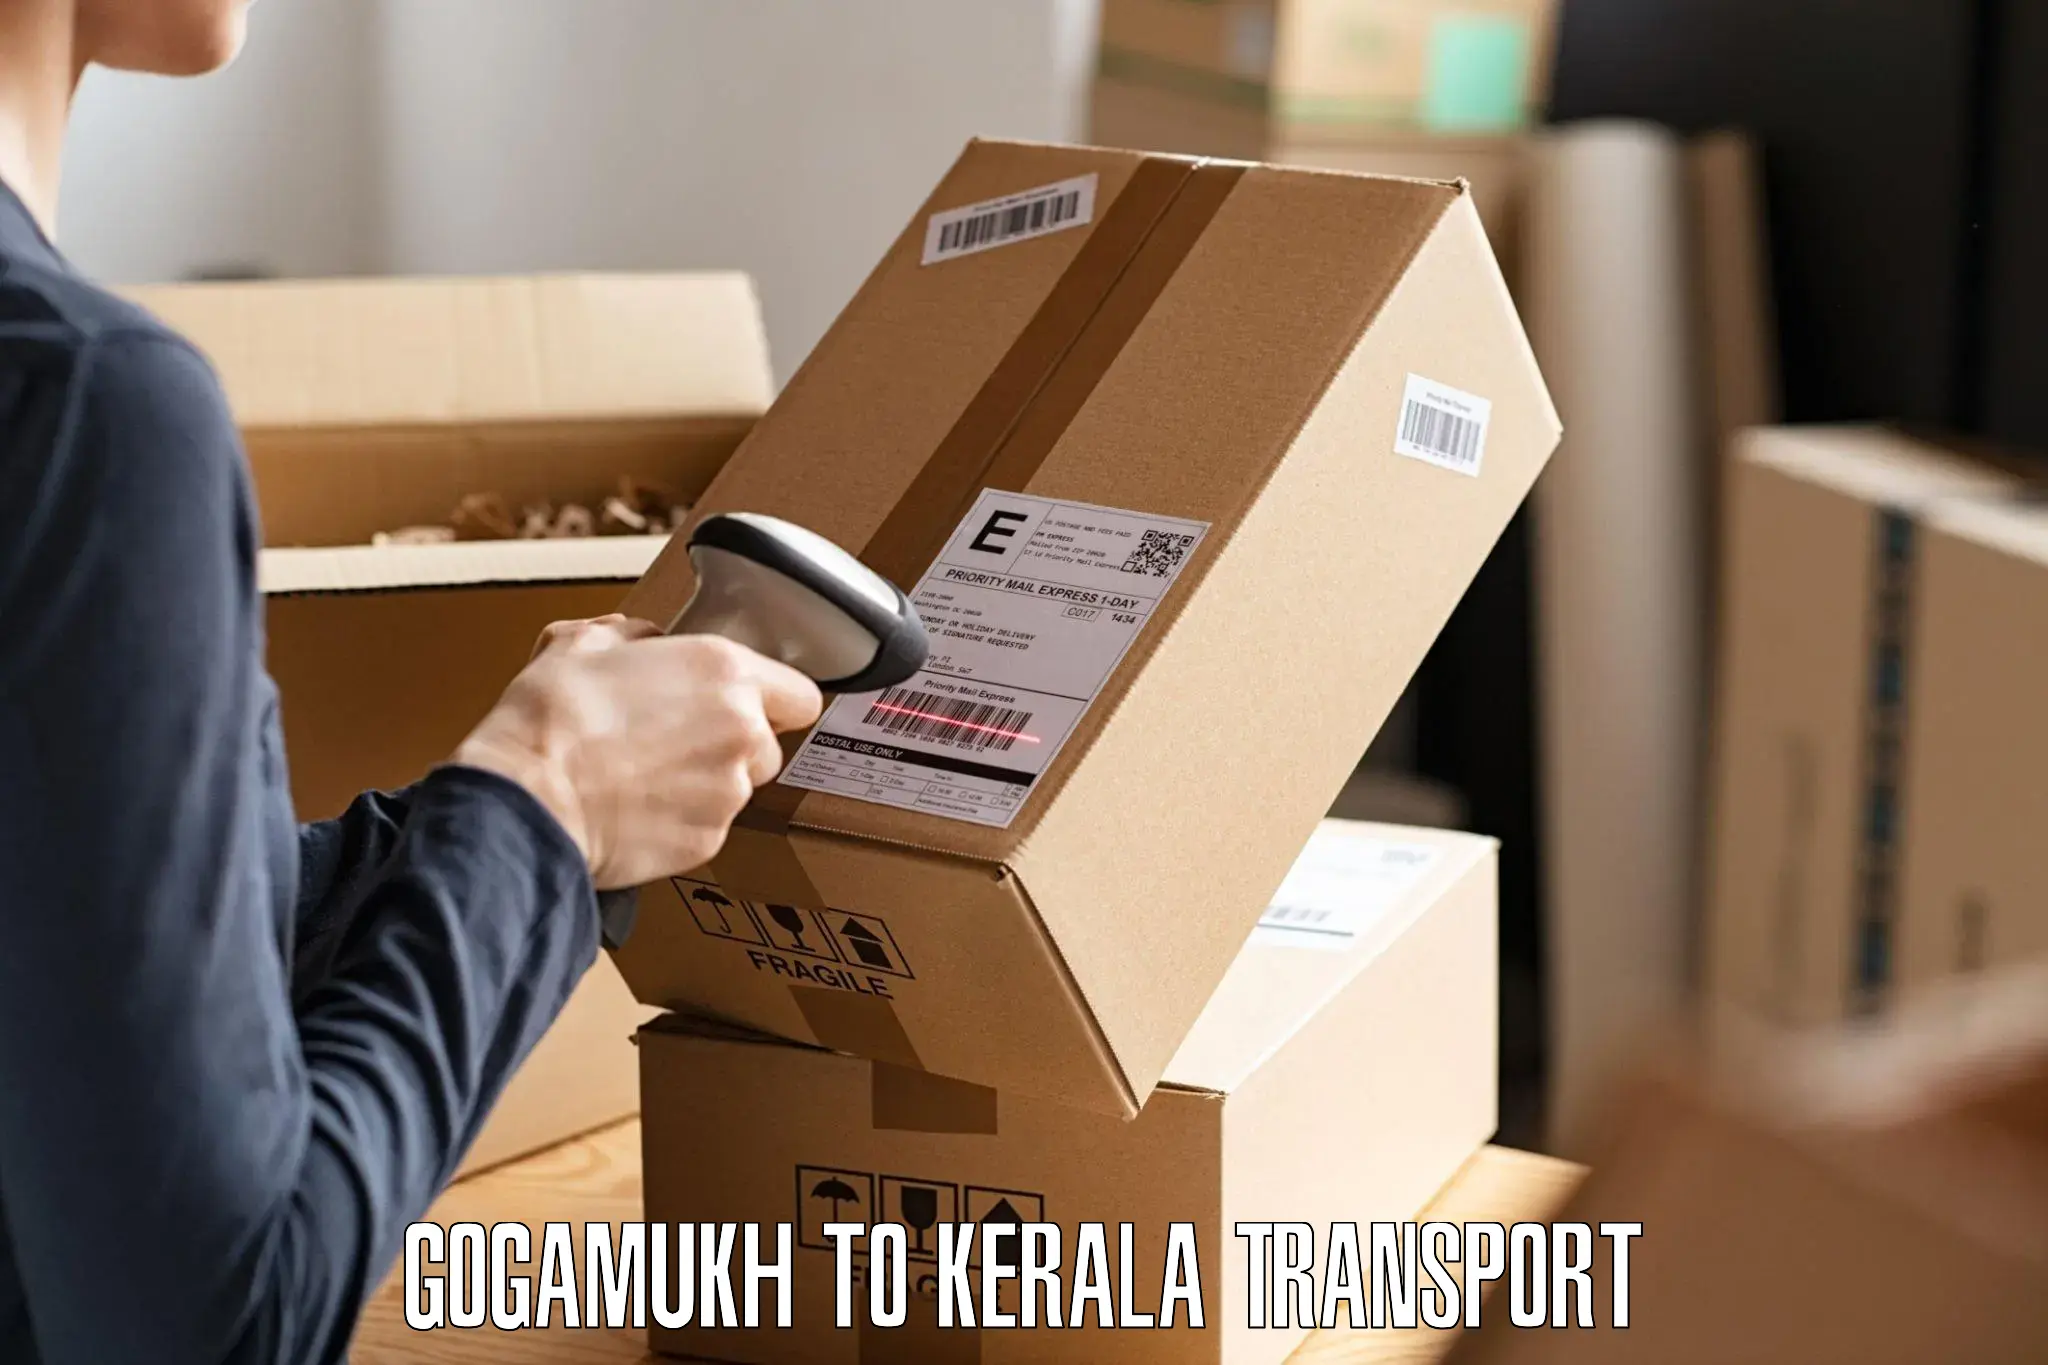 Luggage transport services Gogamukh to Kollam